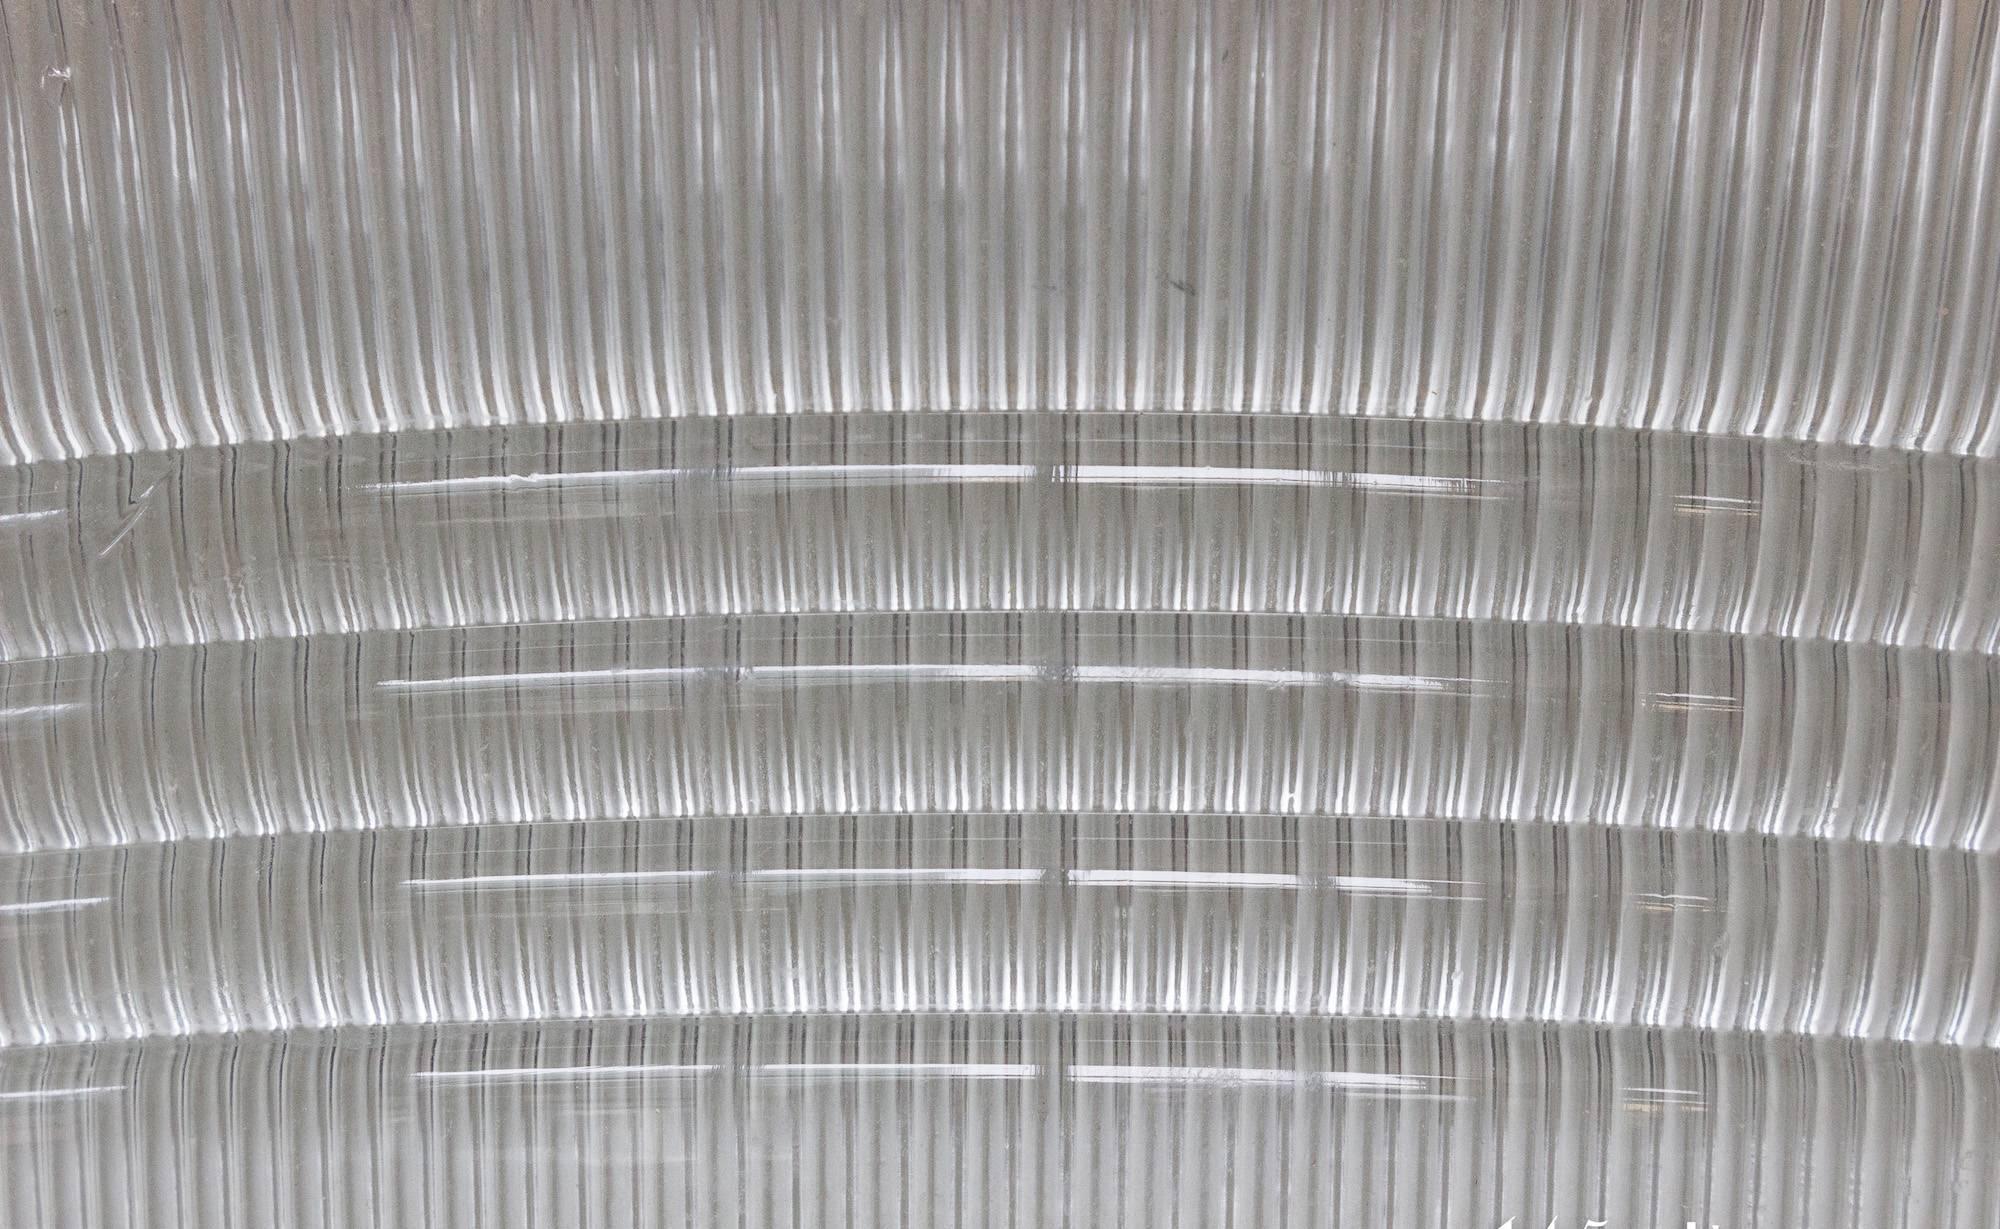 Einzigartig gestaltete Glasleuchte mit einer Mischung aus vertikal und horizontal geschliffenen Rillen. Diese Kombination aus Prismenlinien und runder Form strahlt ein schönes und helles Licht in jedem Raum aus. Höchstwahrscheinlich wurde diese